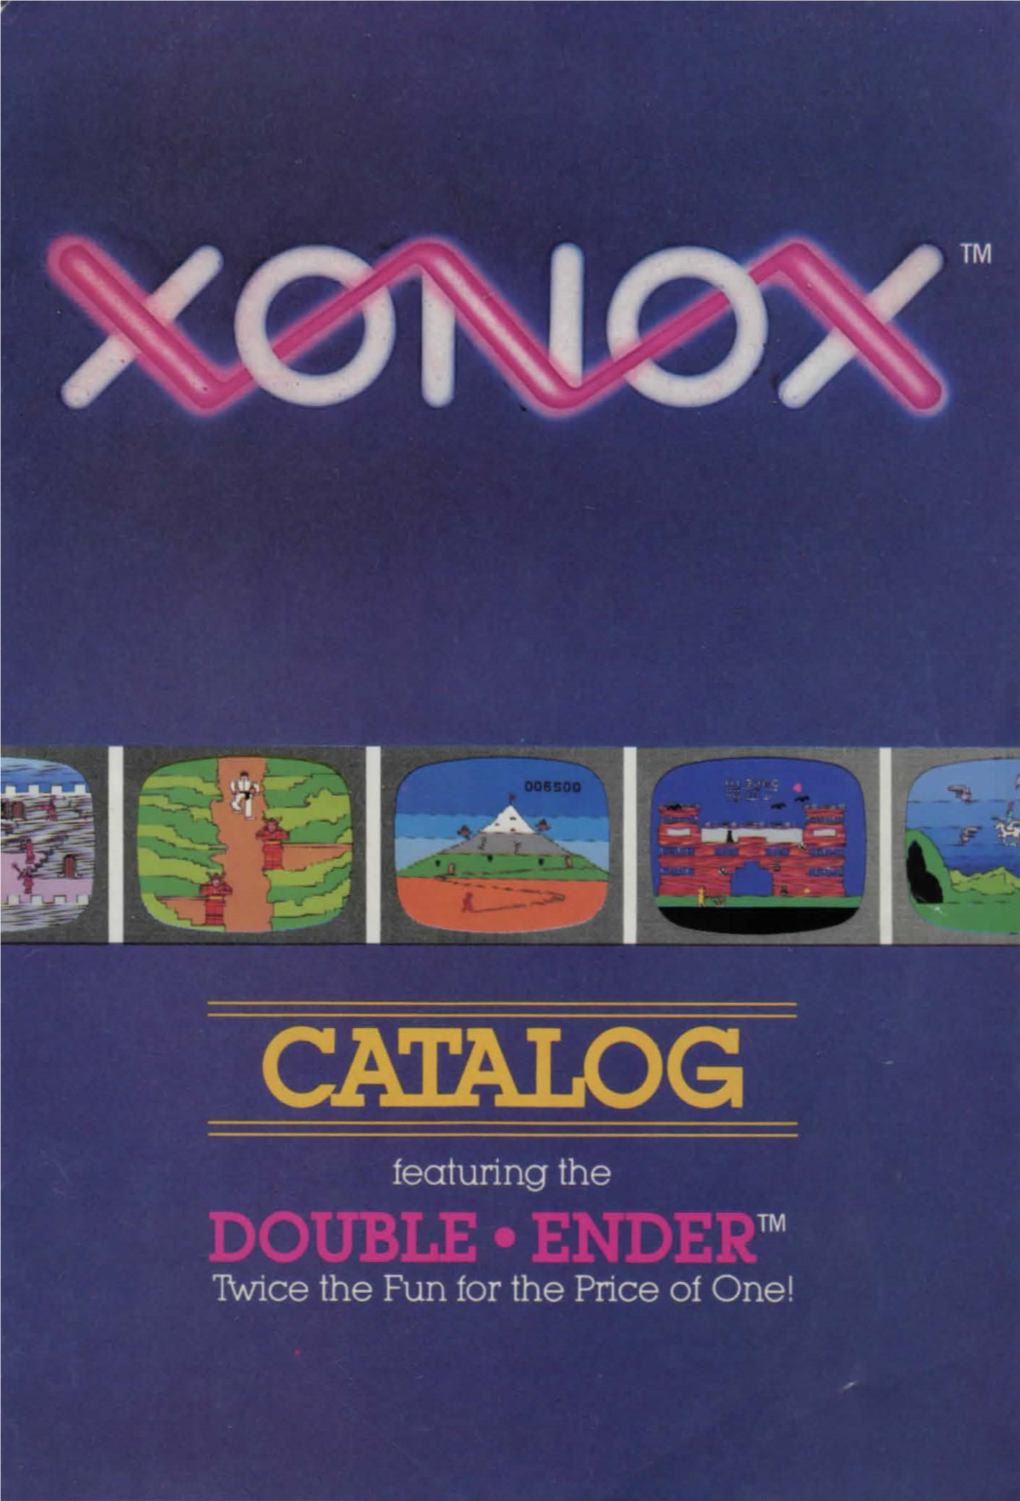 XONOX Catalog